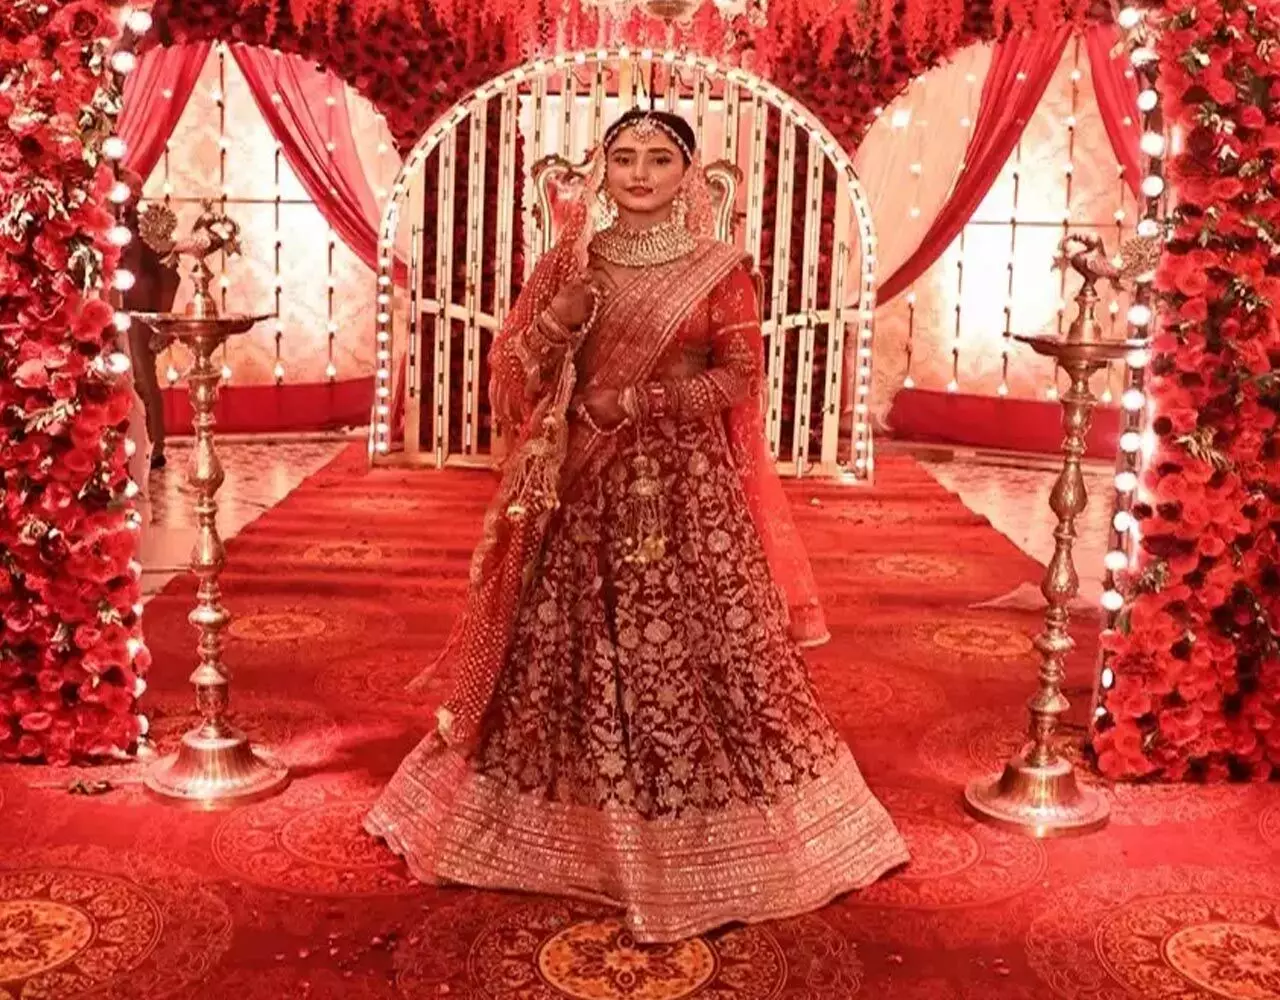 Bride wears pink lehenga choli | दुल्हन ने अपनी शादी में पहनी पिंक लहंगा -चोली